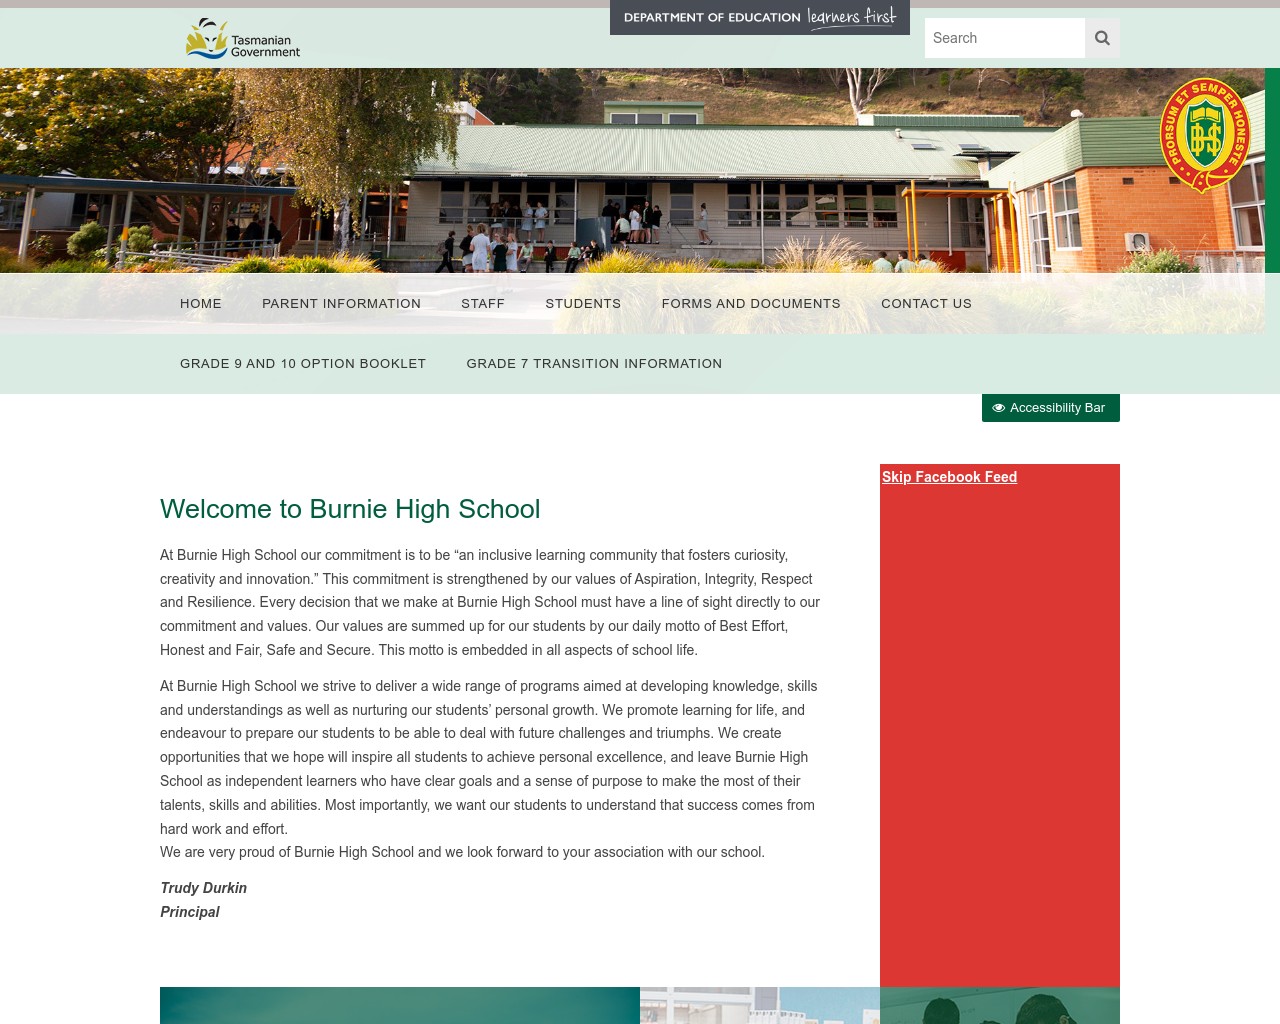 Burnie High School